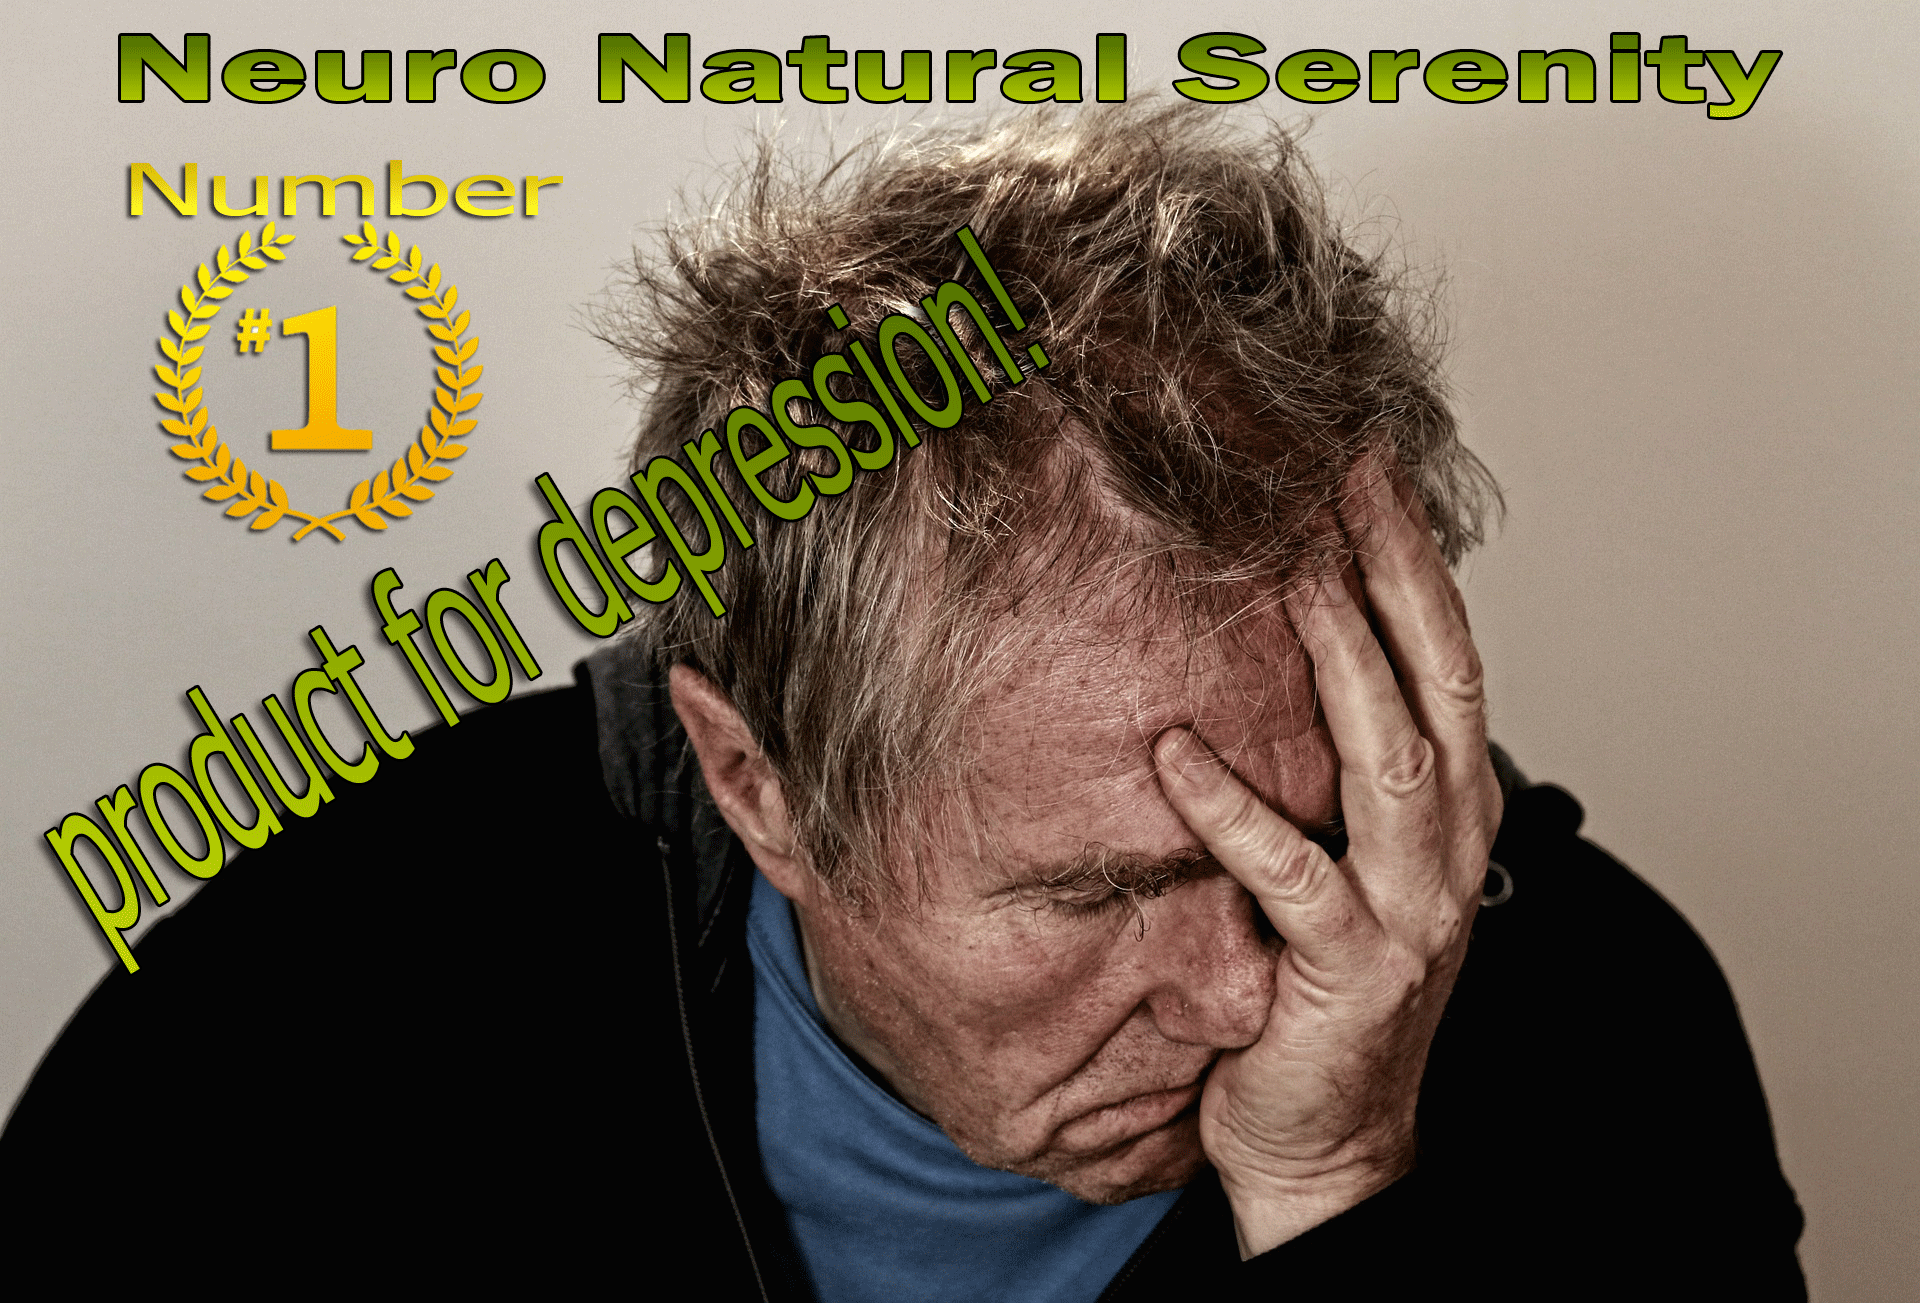 Neuro Natural Serenity Reviews image